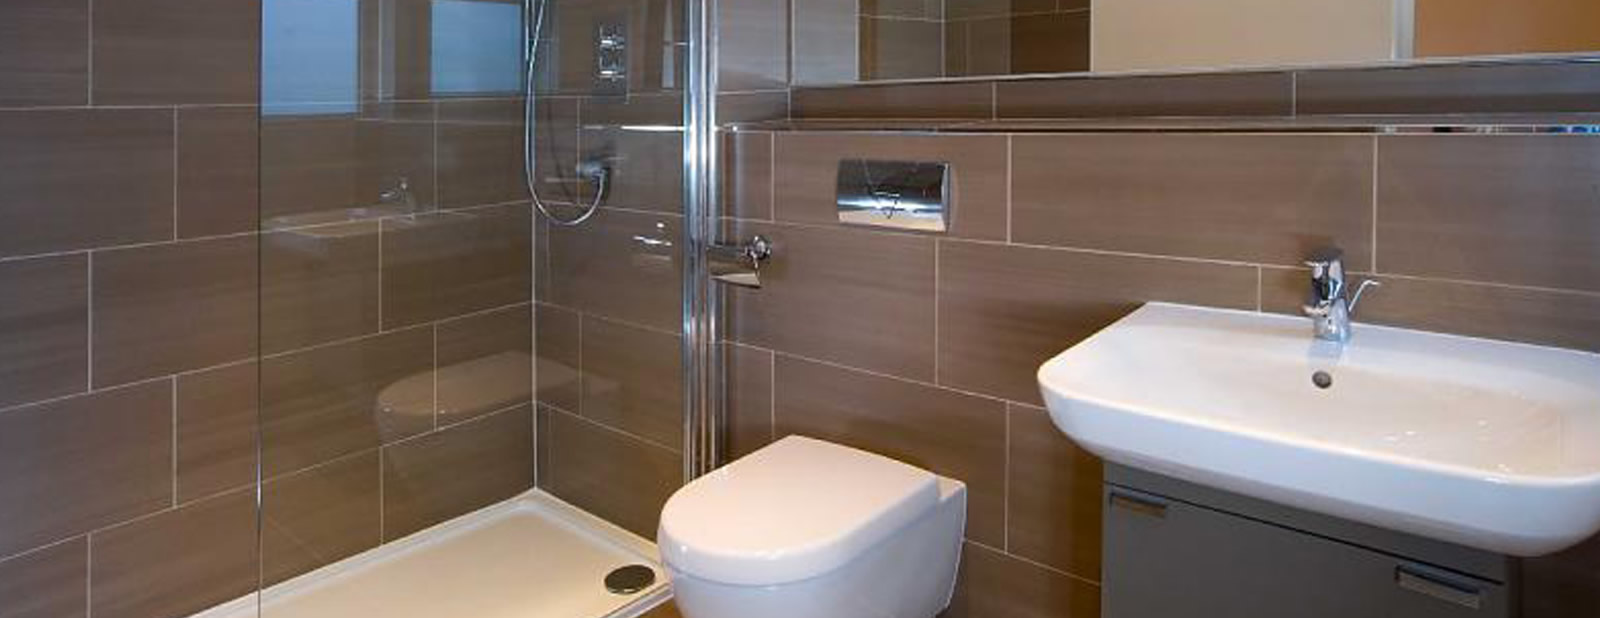 bathroom installers near me harrow london peter brown plumbing heating